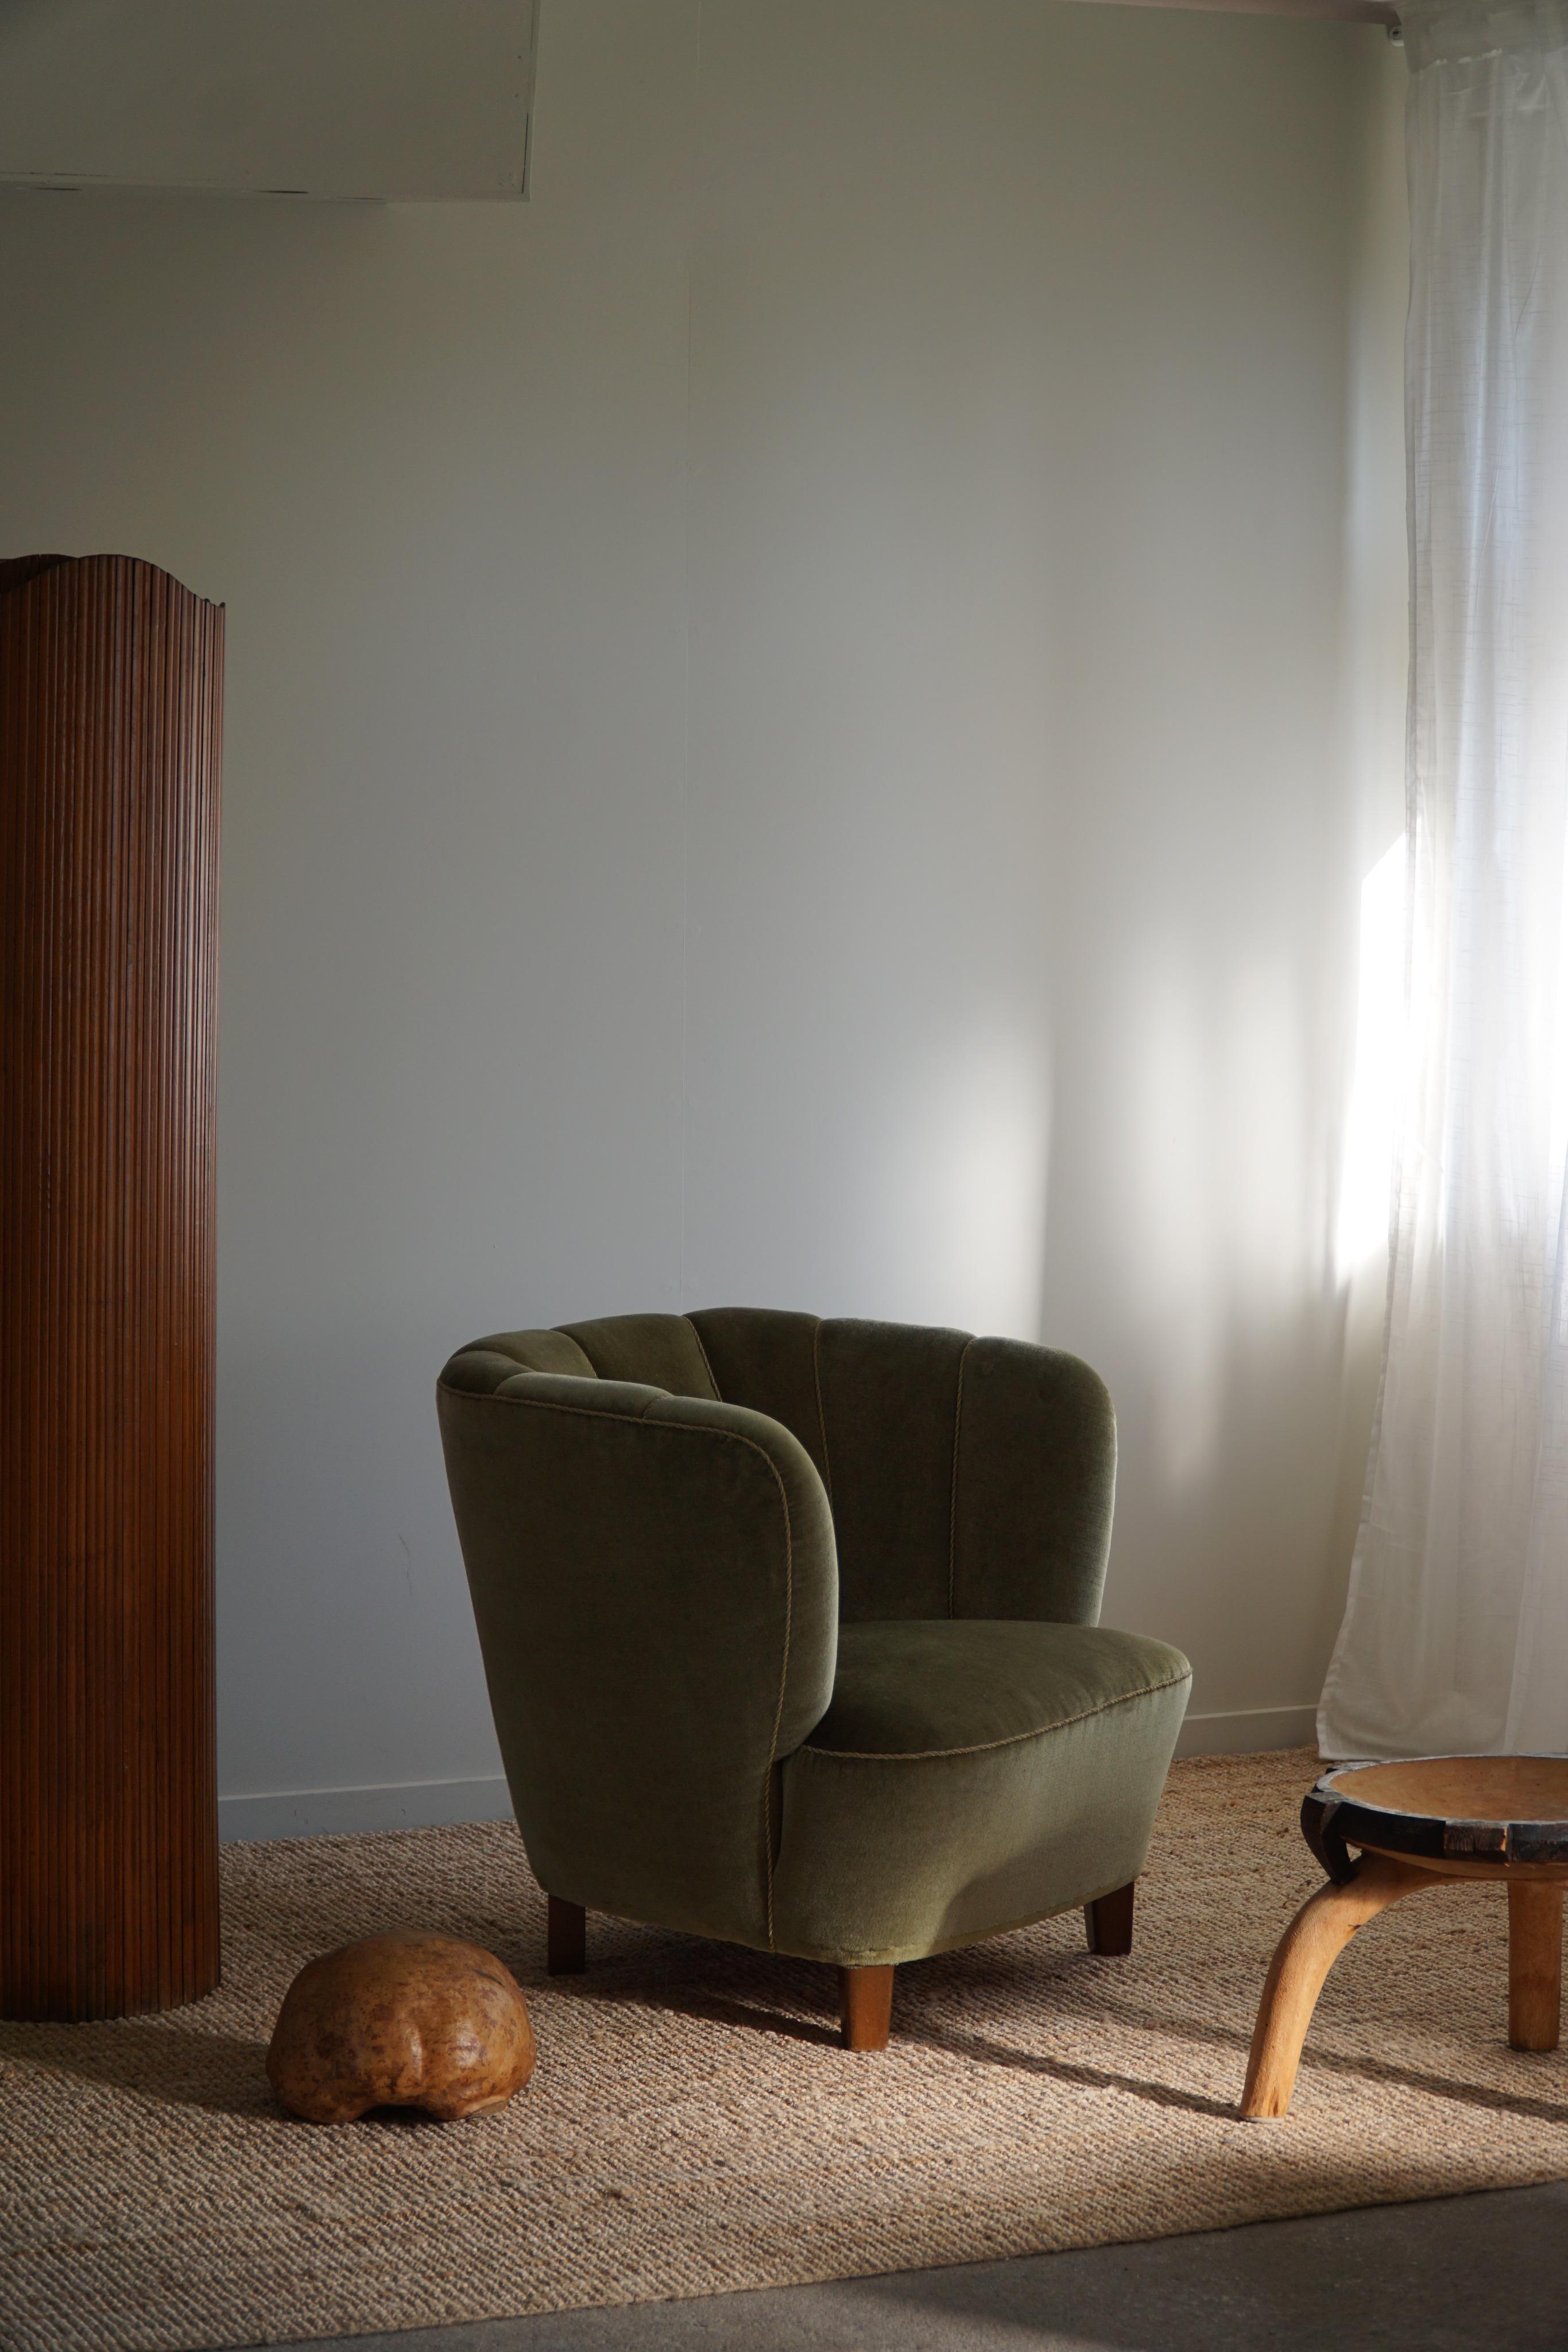 Un rare fauteuil confortable avec de belles courbes. Tissu original dans une belle couleur verte qui complète les matériaux naturels. Fabriqué par un ébéniste danois expérimenté dans les années 1940. Cette magnifique chaise est fabriquée dans le